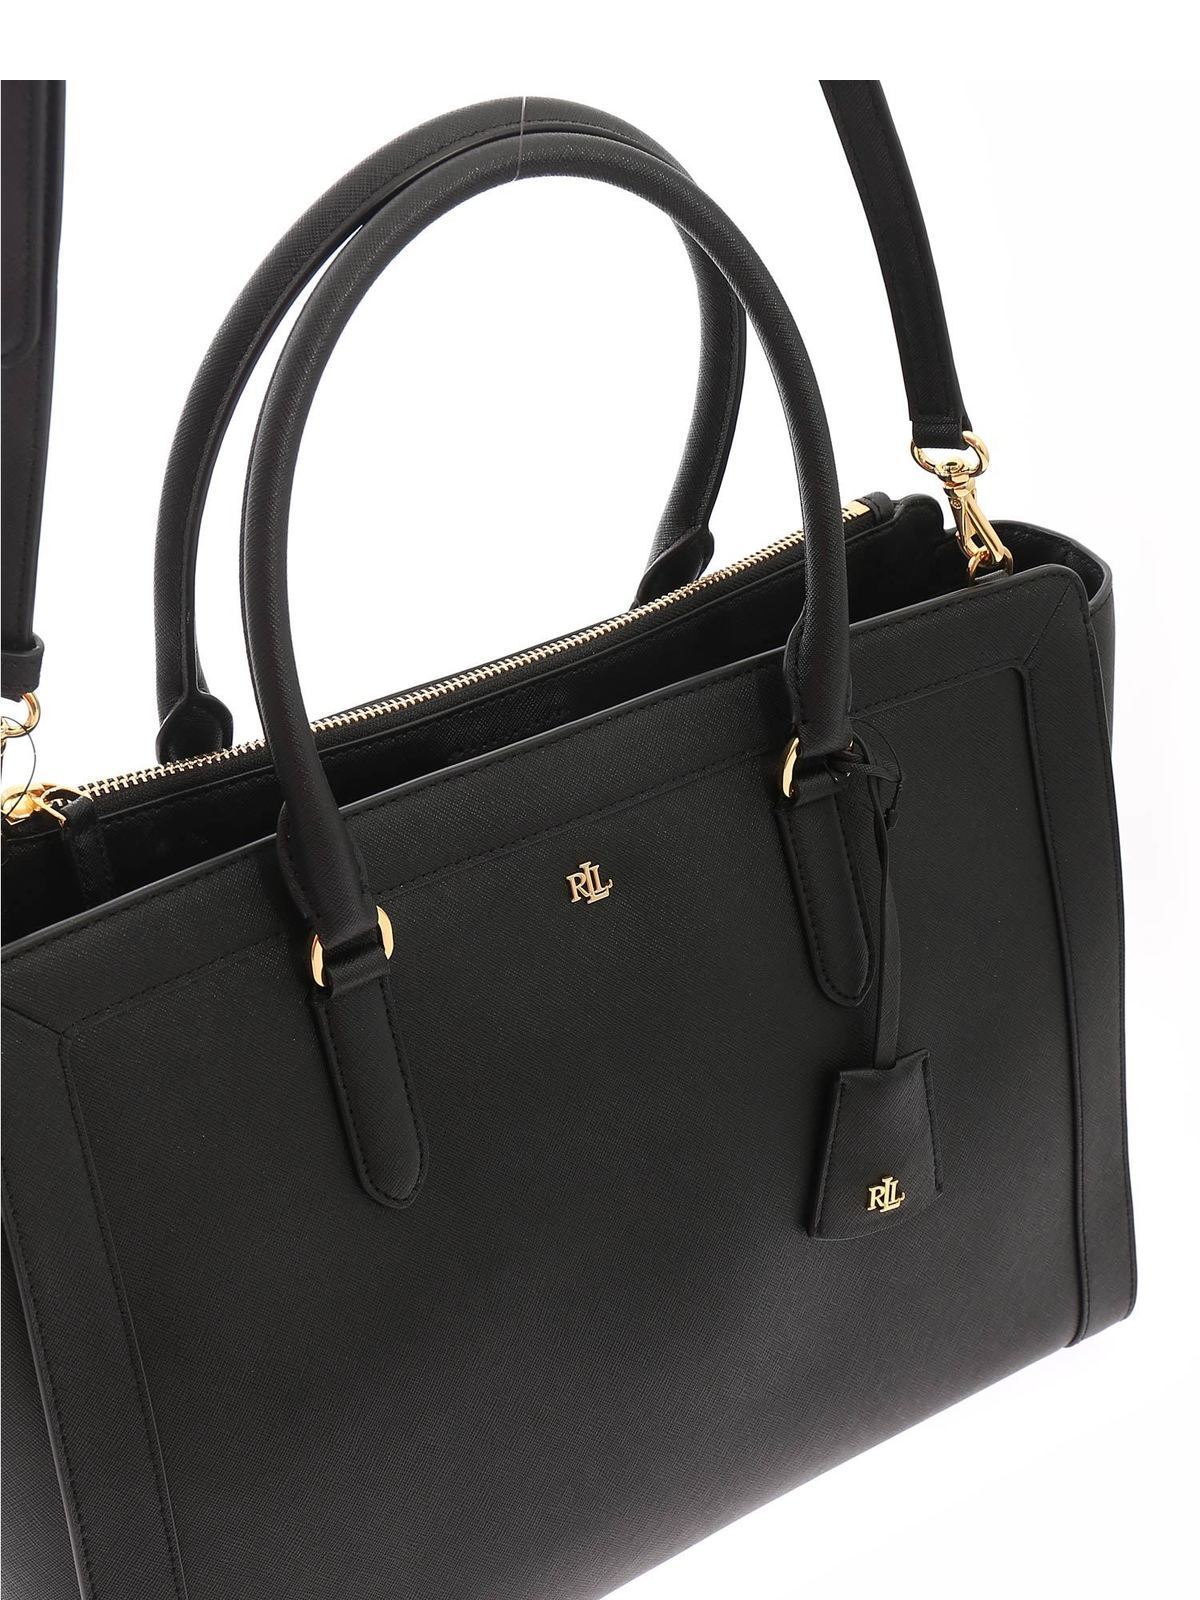 Totes bags Lauren Ralph Lauren - Brooke bag in black - 431818785001